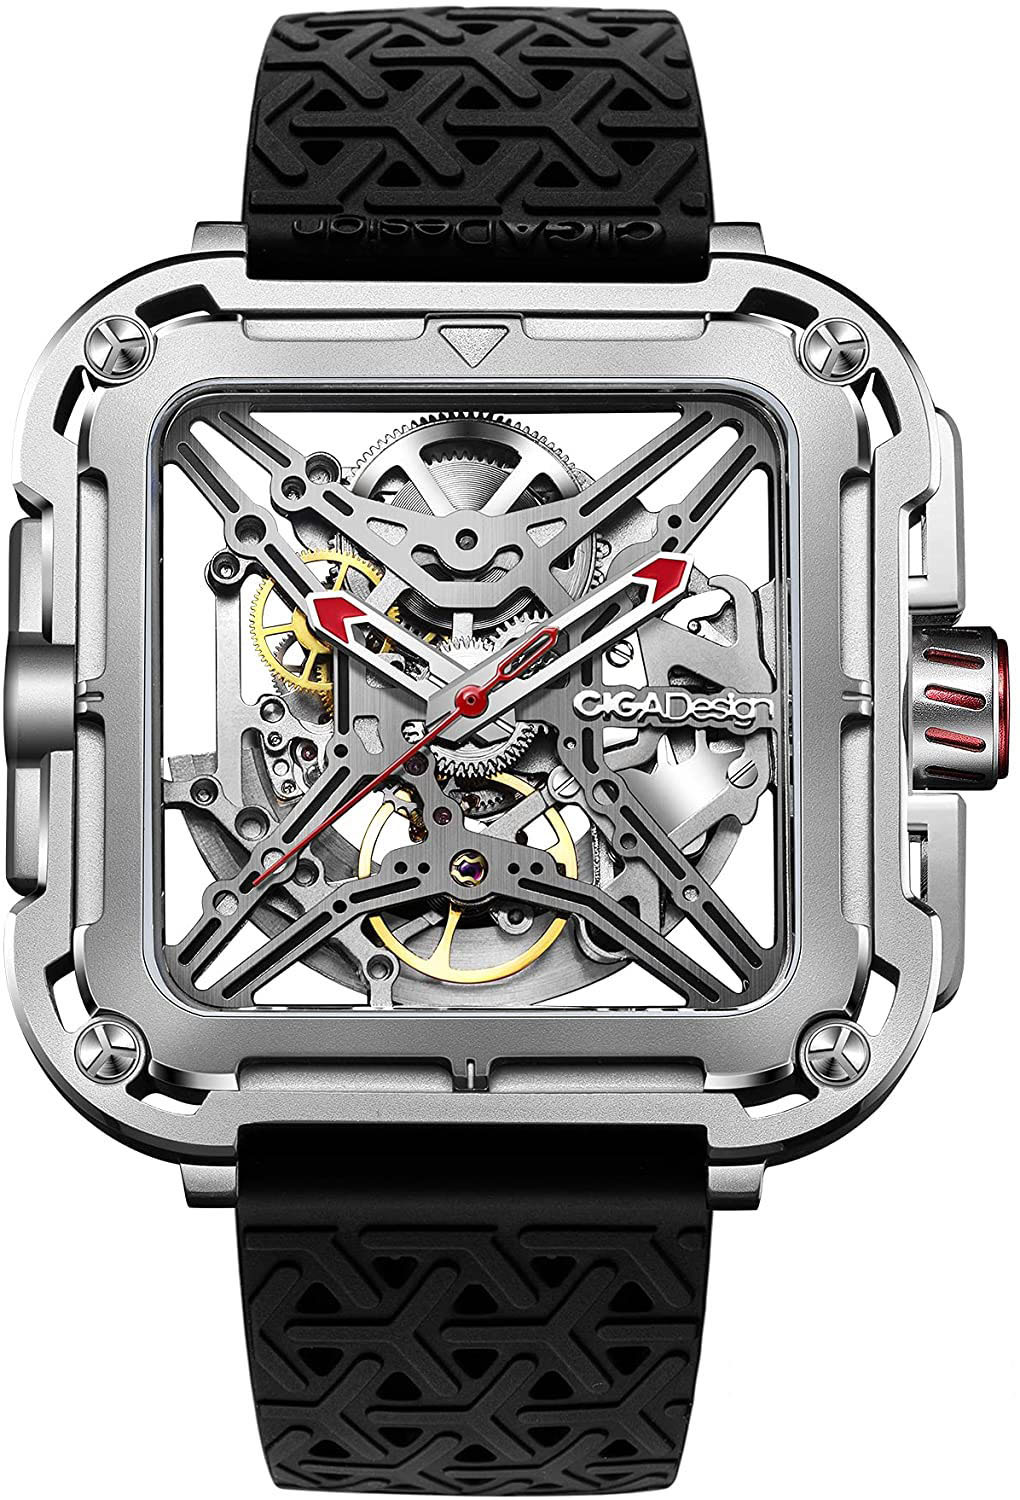 Đồng hồ cơ ciga design x gorilla bản quốc tế - mi4vn, ciga x, đồng hồ nam - ảnh sản phẩm 9